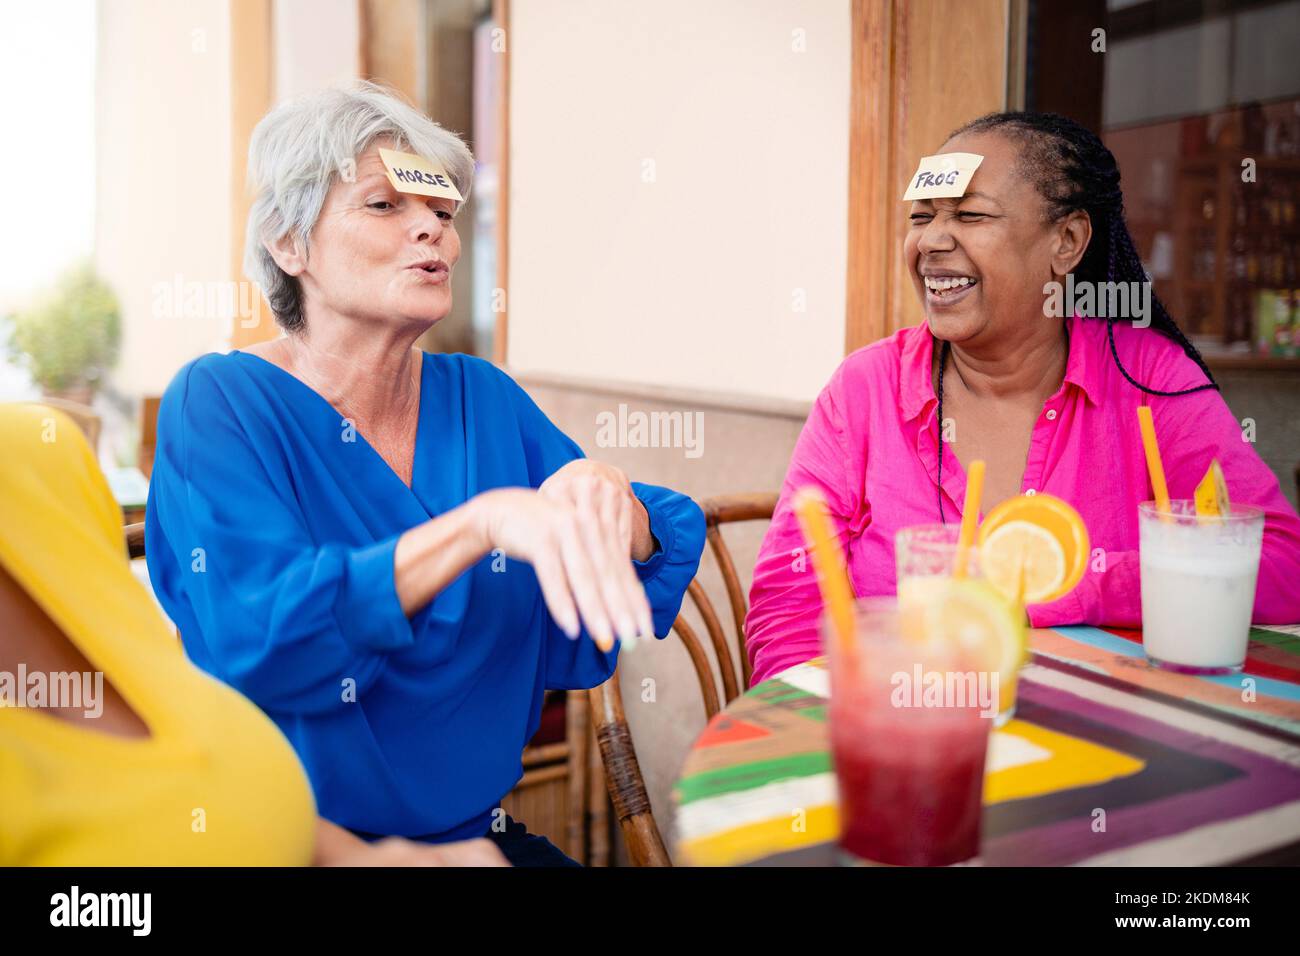 Multirassische ältere Freunde, die Spaß beim Spielen von „Guess Who Stirnaufklebern“ im Bar-Restaurant haben - Fokus auf afrikanisches Frauengesicht Stockfoto